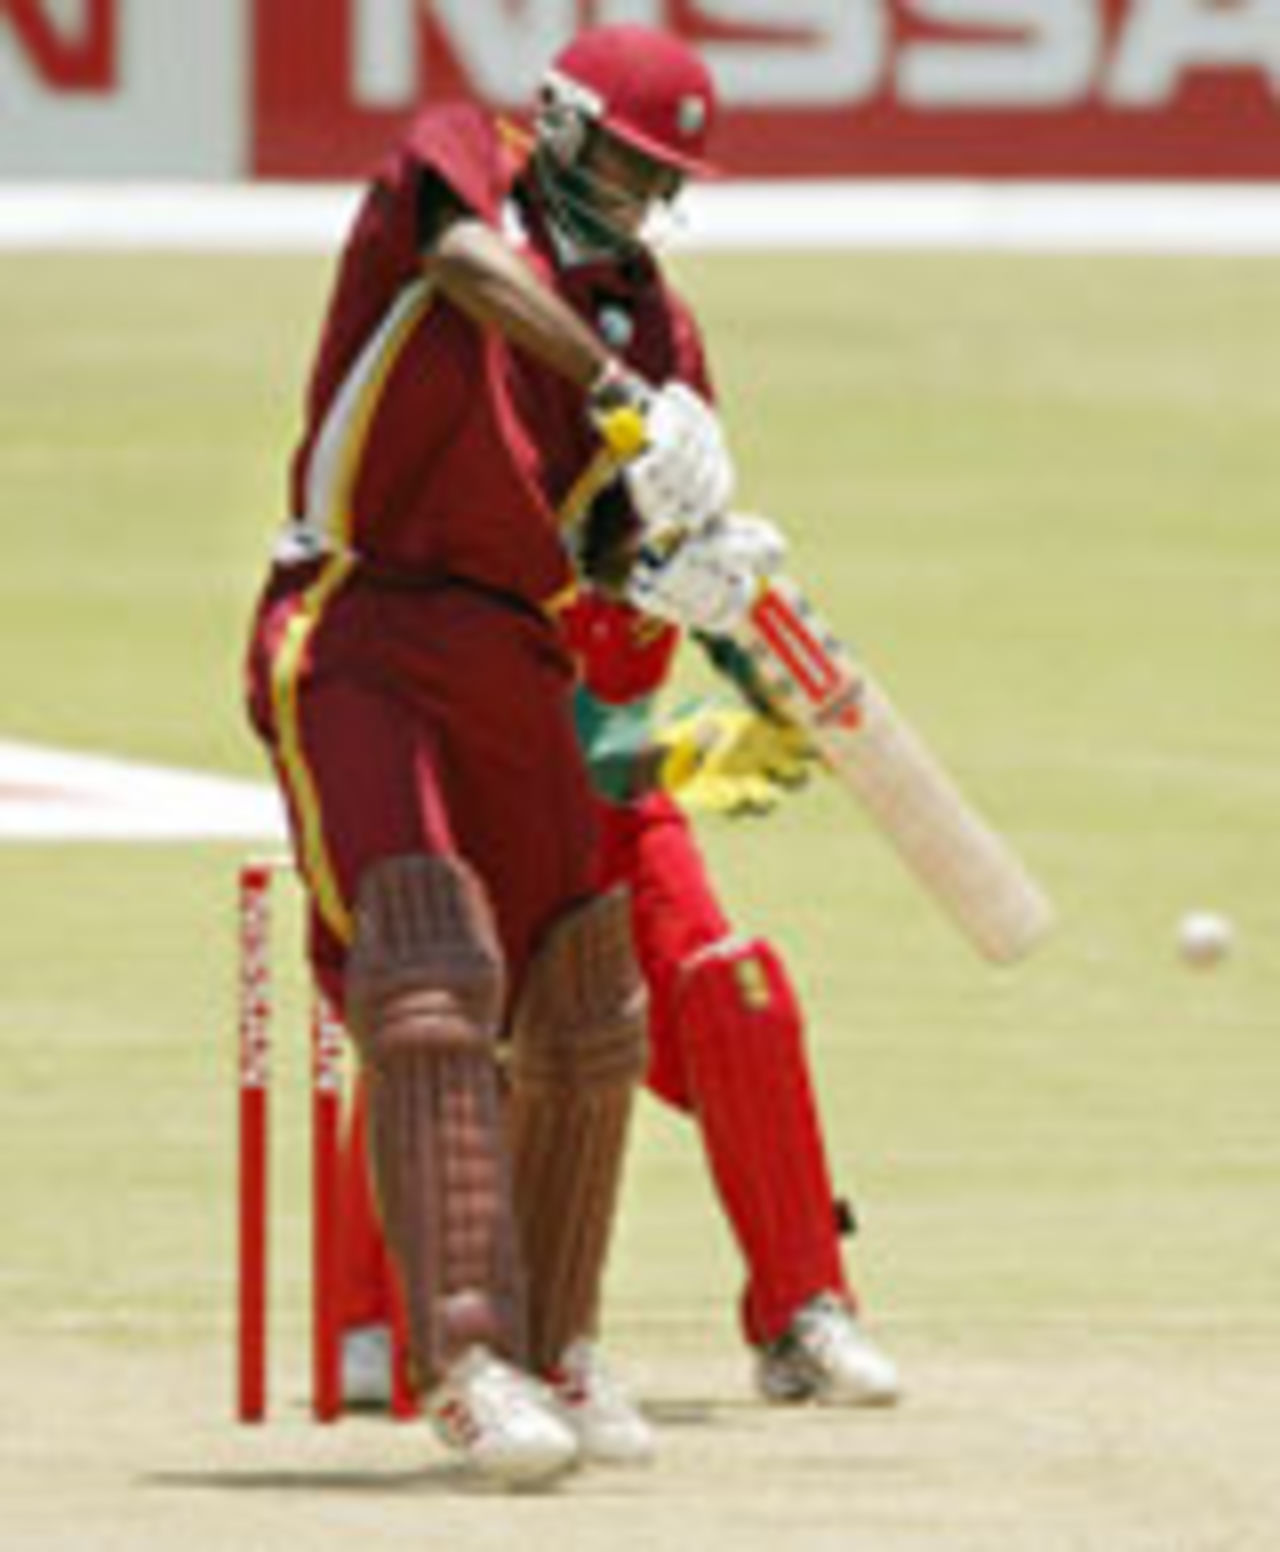 Chris Gayle batting, Zimbabwe v West Indies, 1st ODI, November 22, 2003